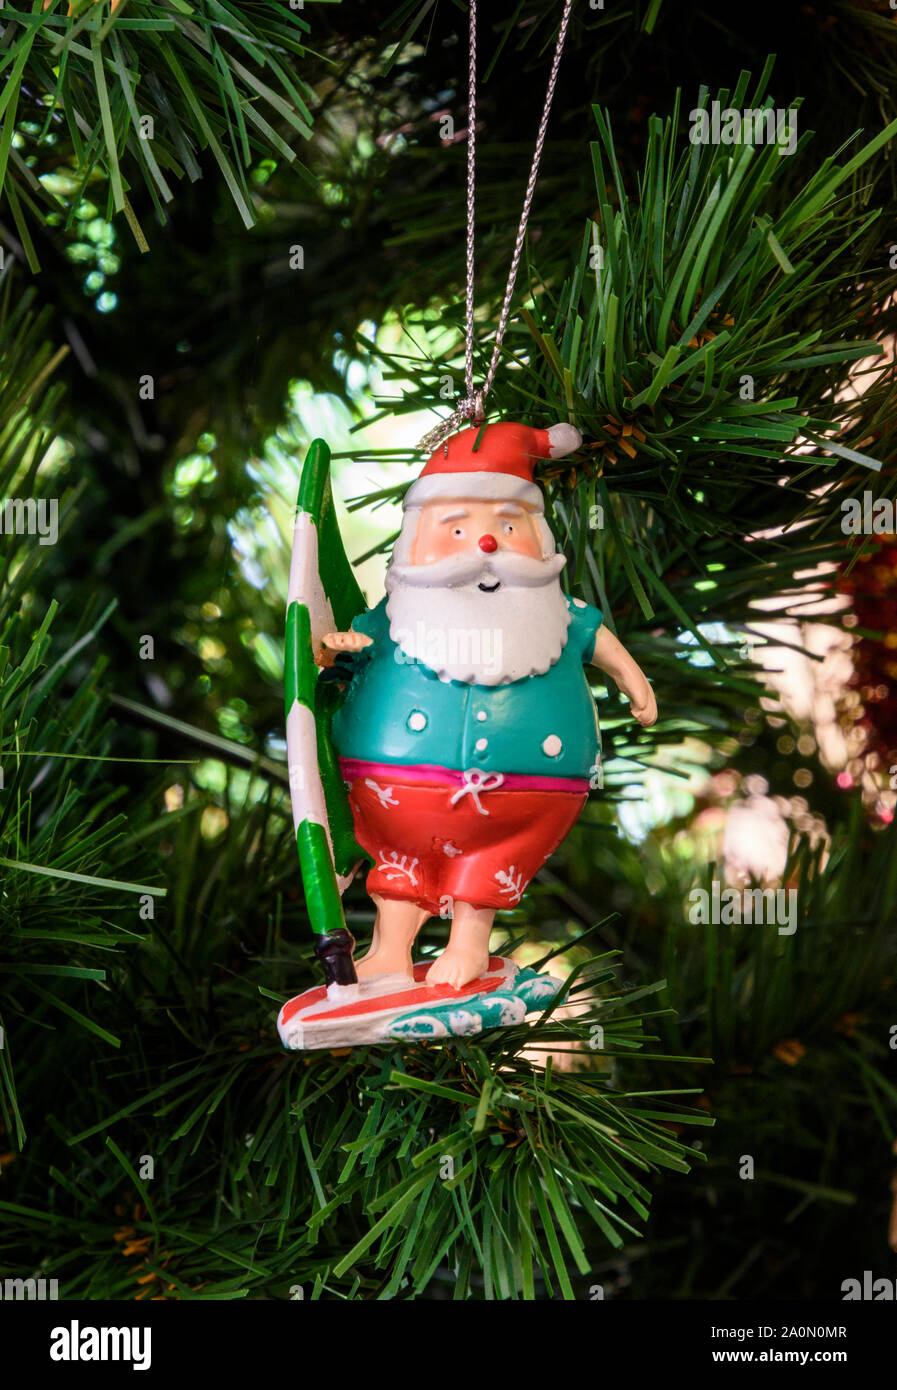 Australische Vater Weihnachten Dekoration am Weihnachtsbaum in Australien hängen Stockfoto